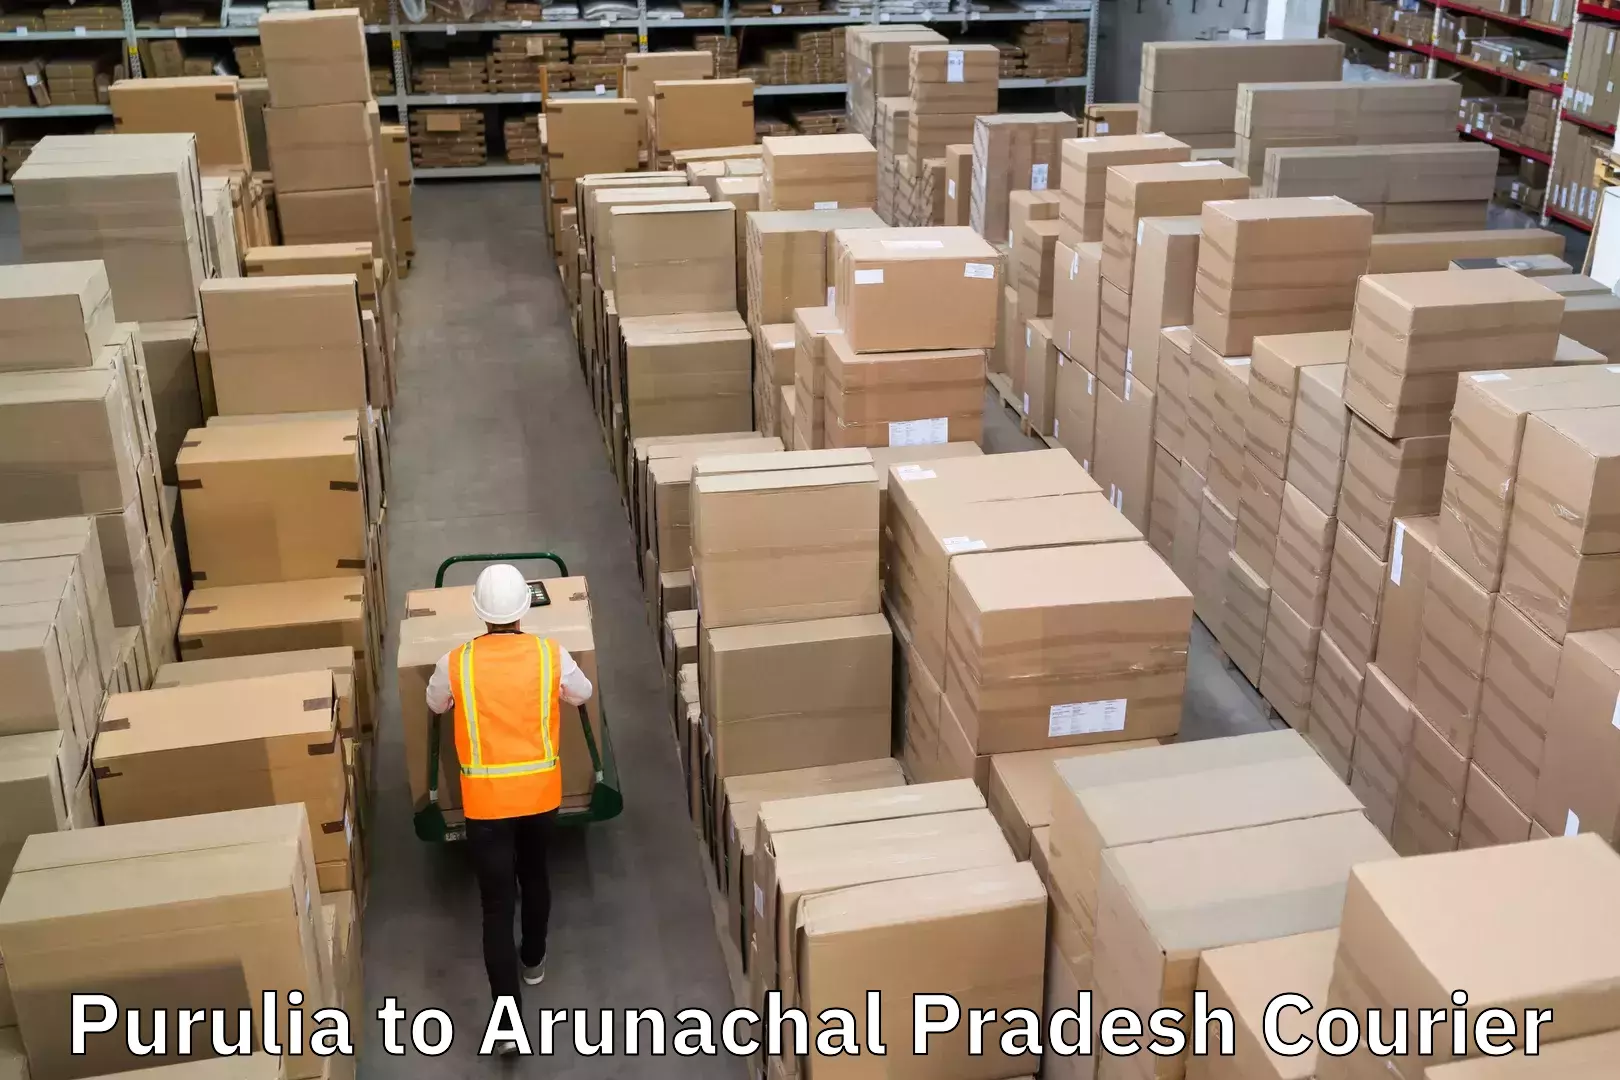 User-friendly courier app Purulia to Arunachal Pradesh